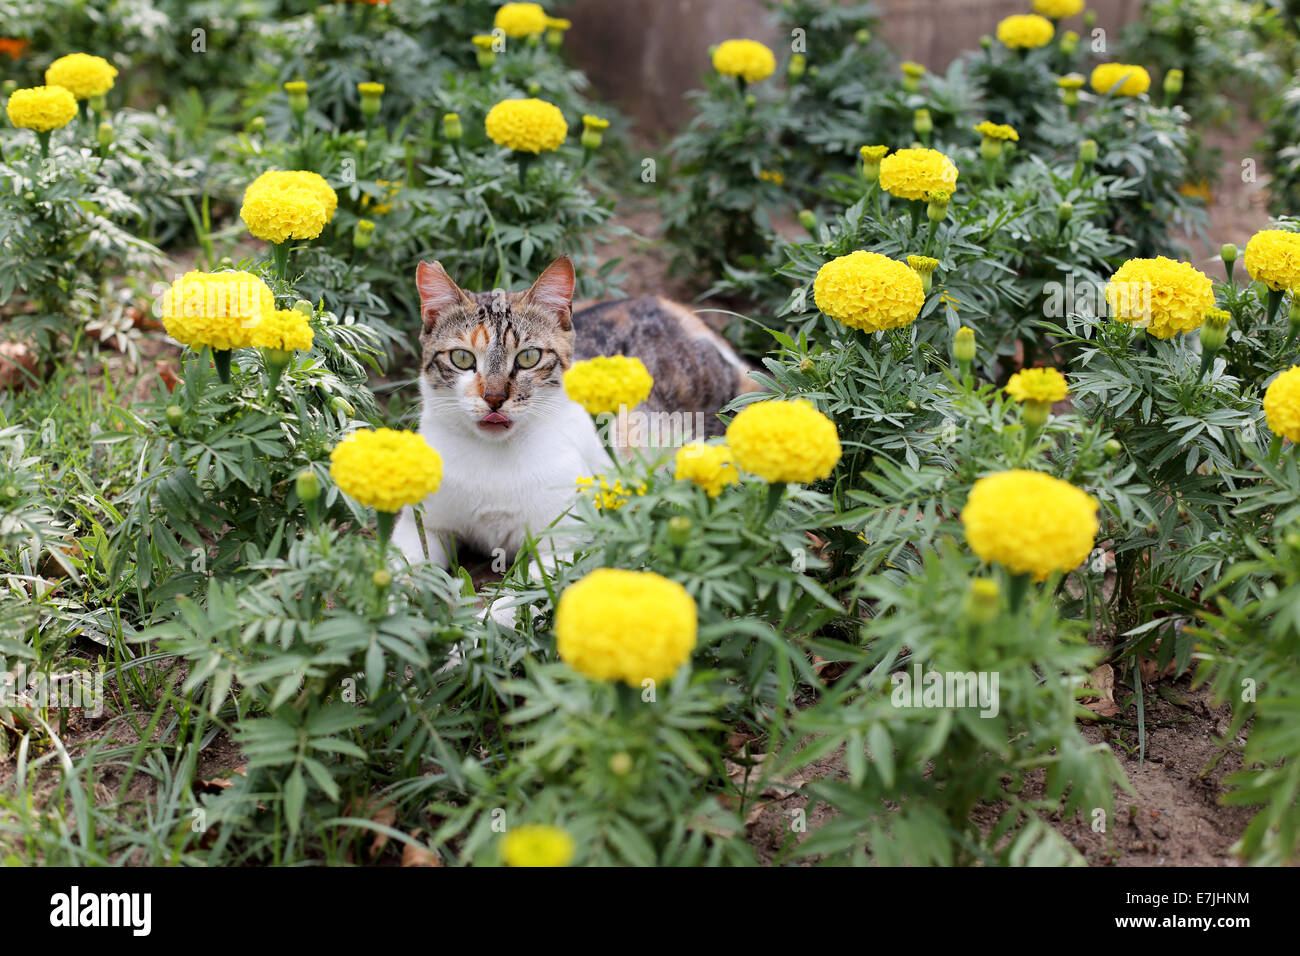 The Cat Lies in the Garden Between Yellow Flowers Stock Photo